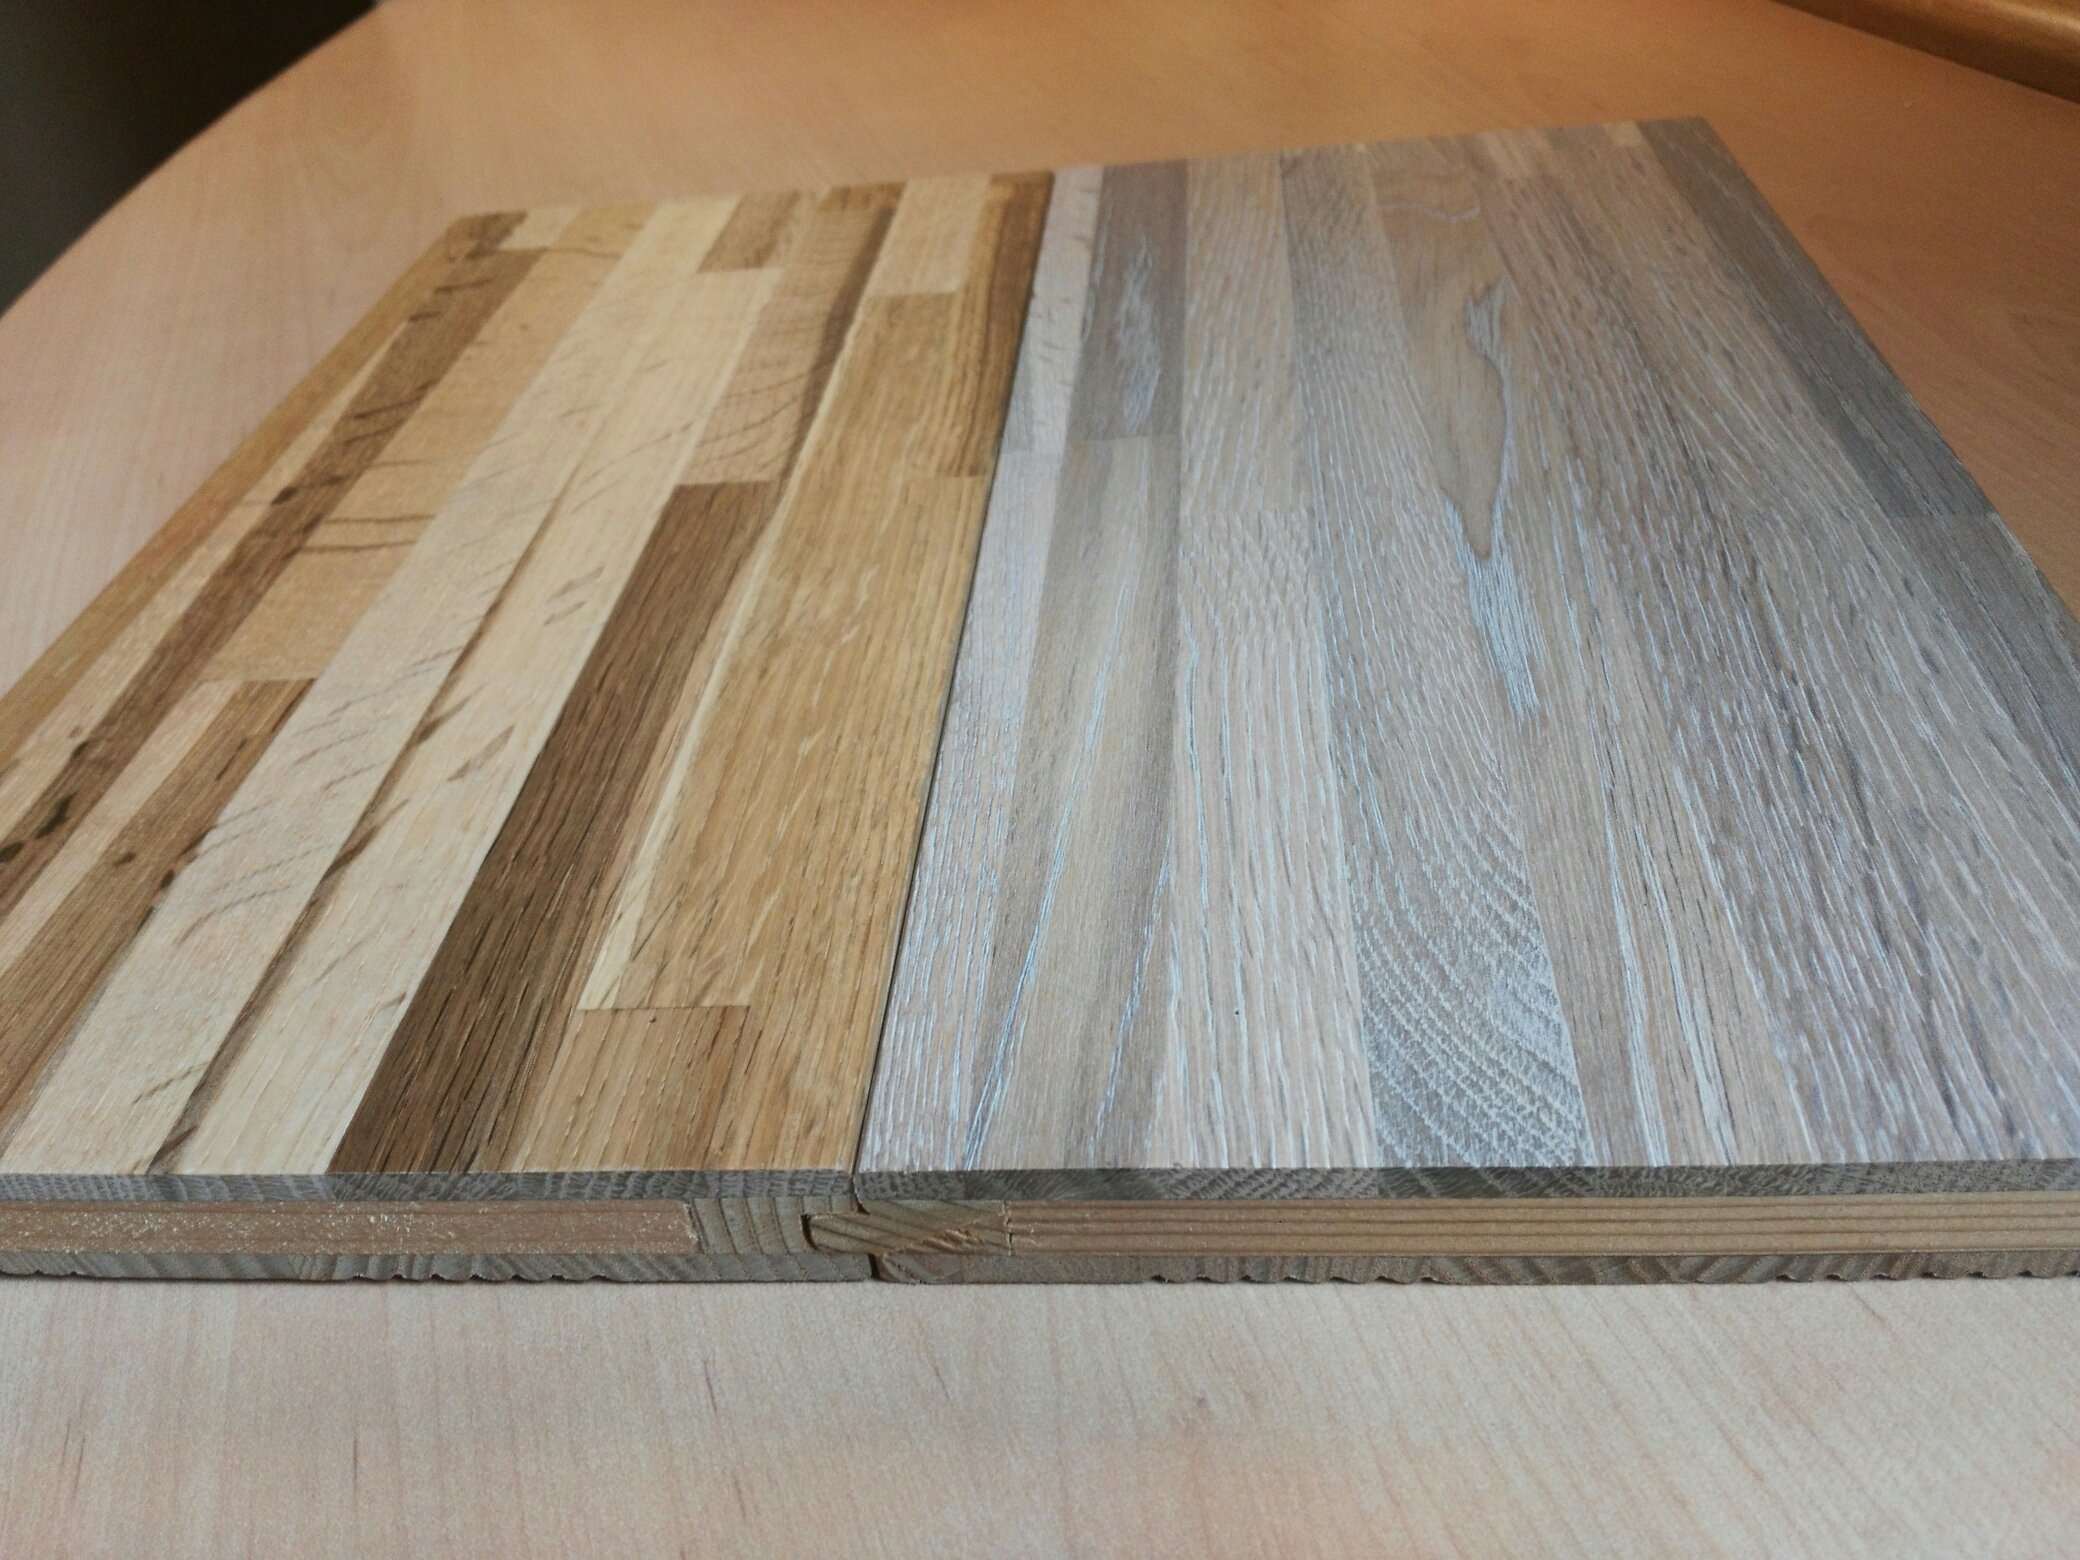 Finger-Point Oak Board Solid Wood Flooring